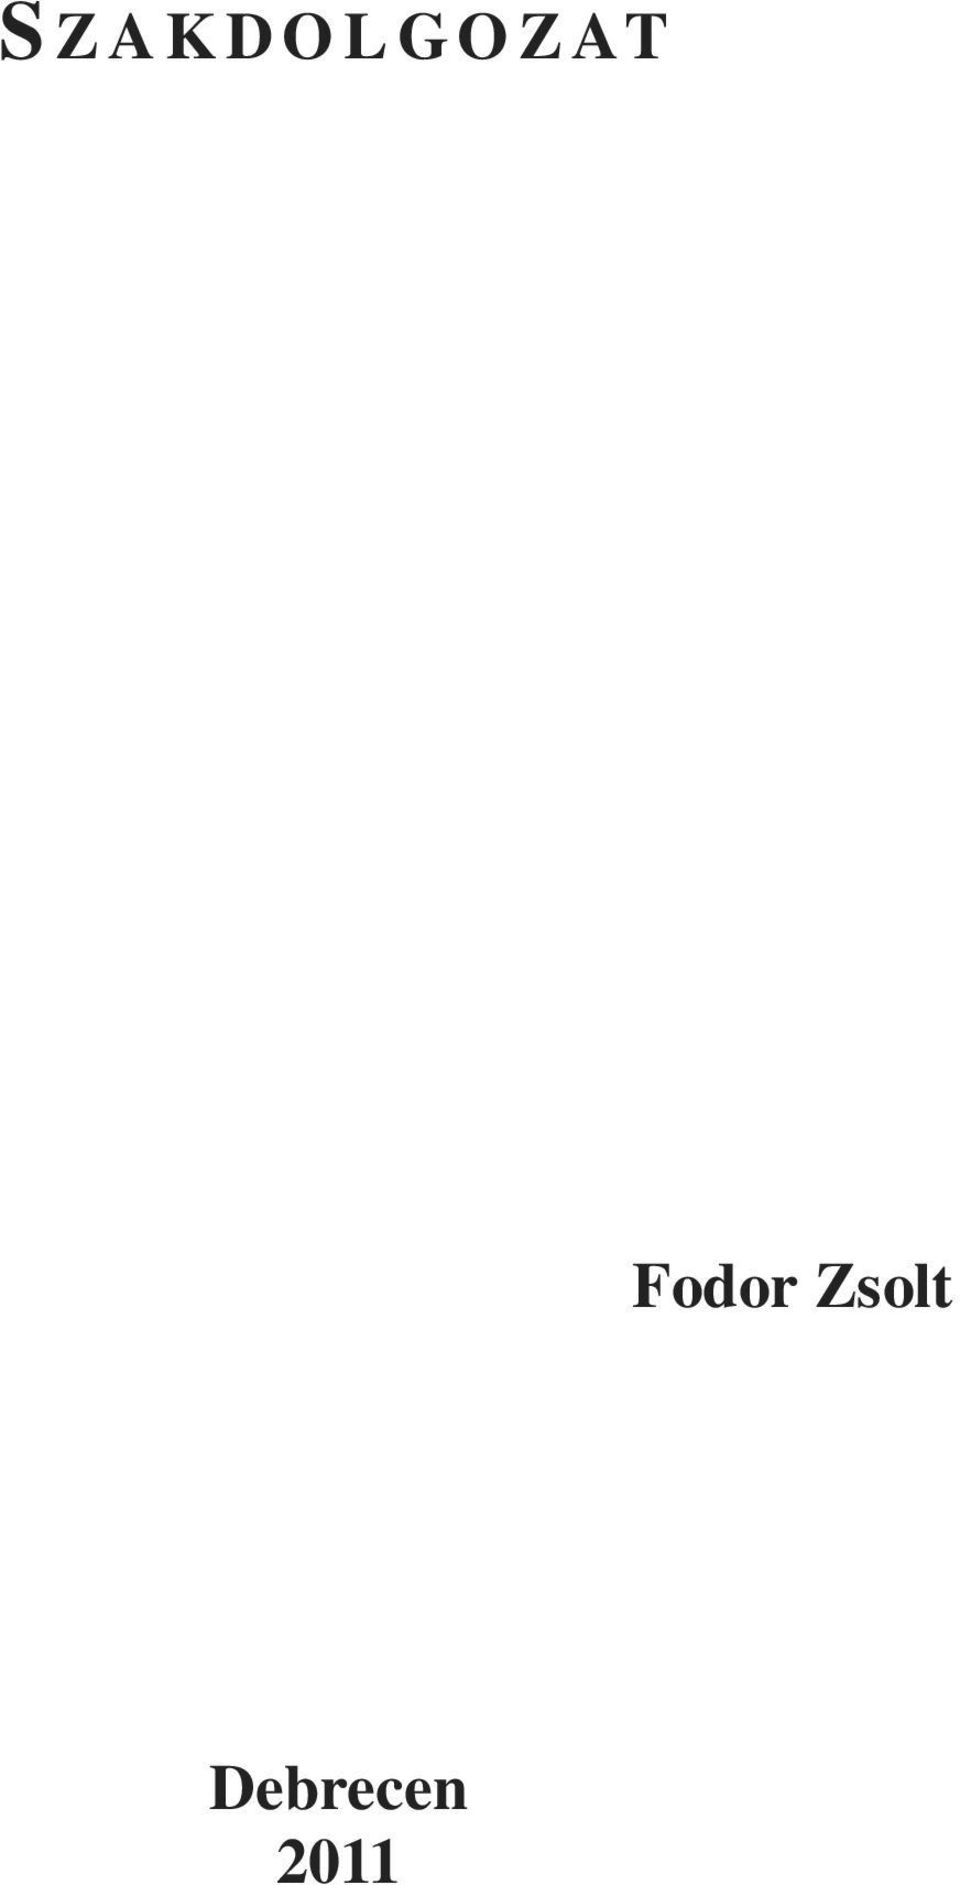 Fodor Zsolt